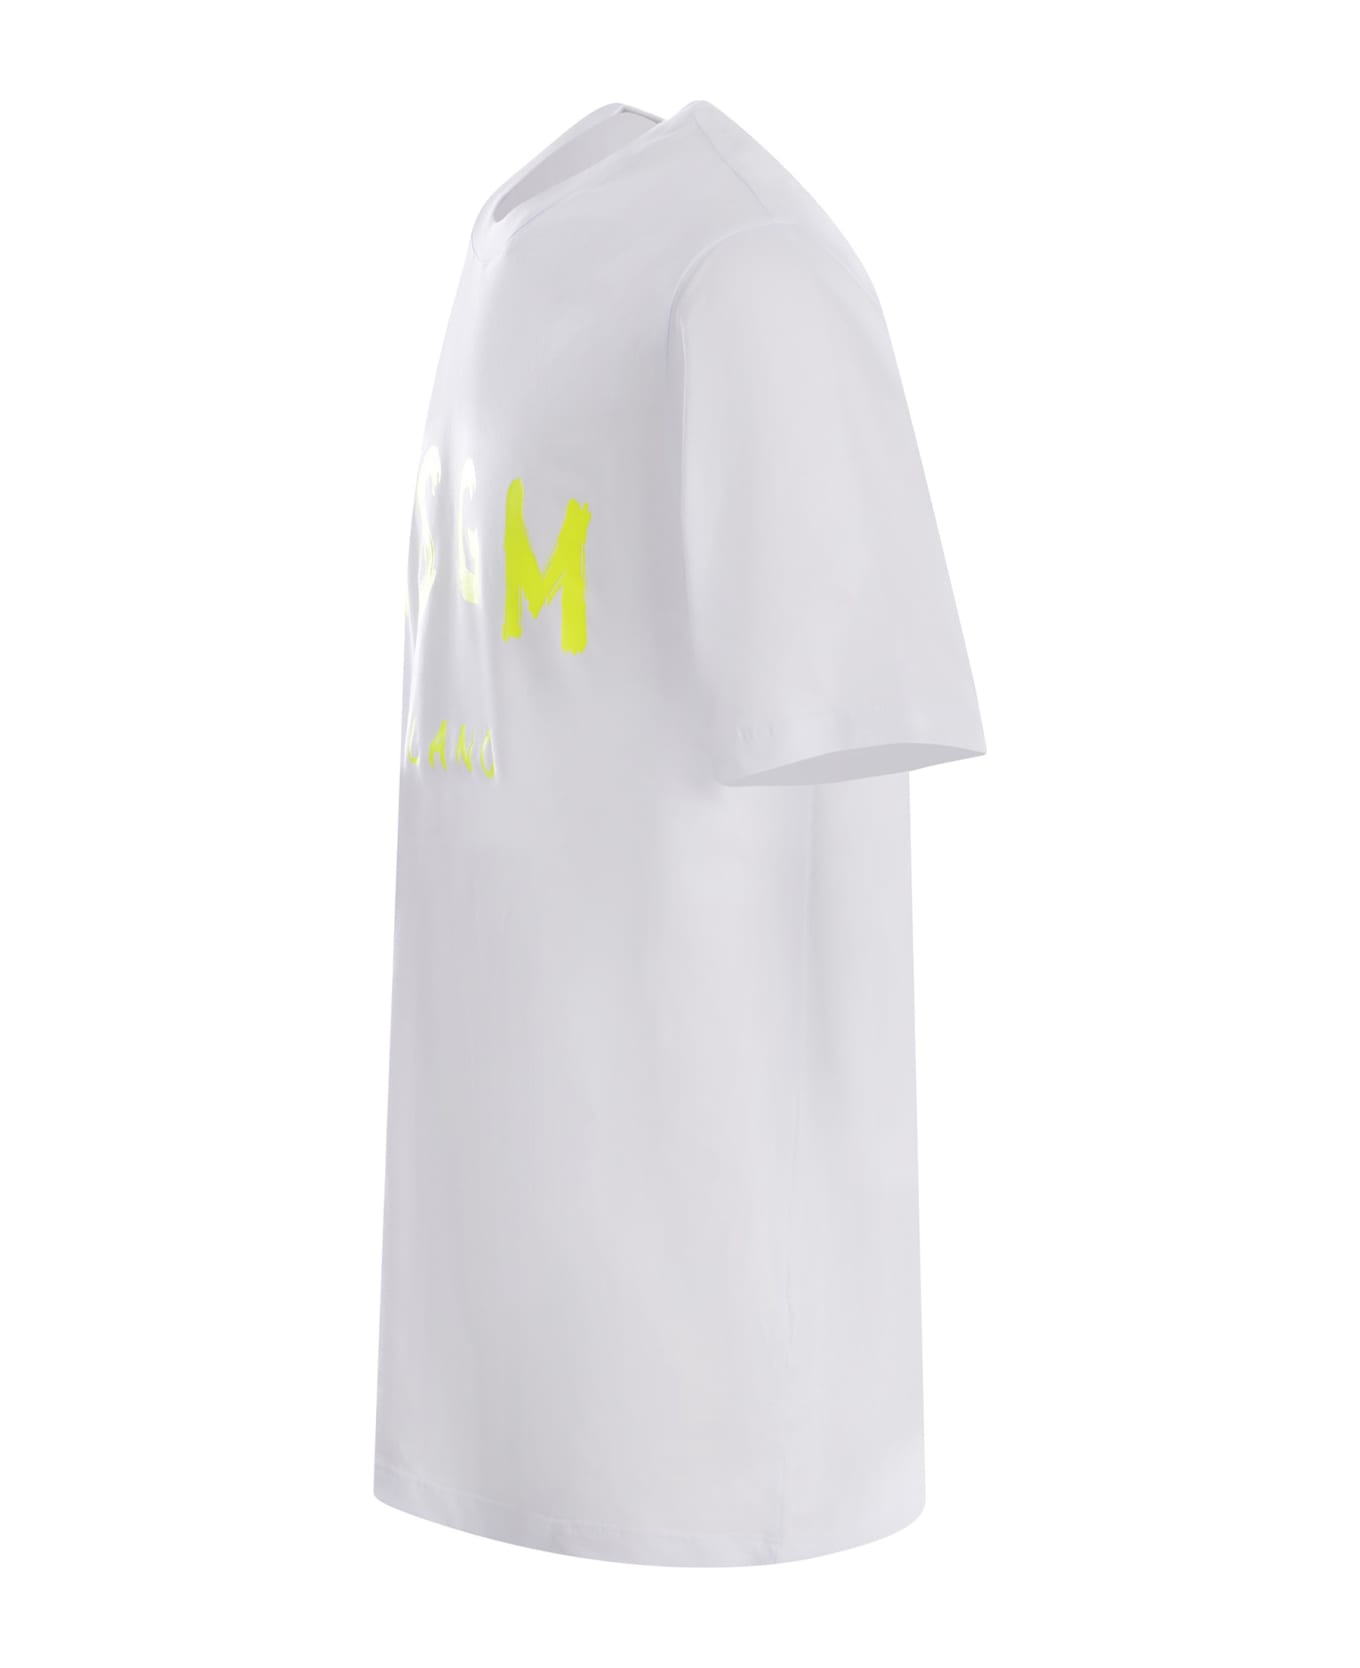 MSGM T-shirt Msgm Realizzata In Cotone Disponibile Store Pompei - Bianco シャツ